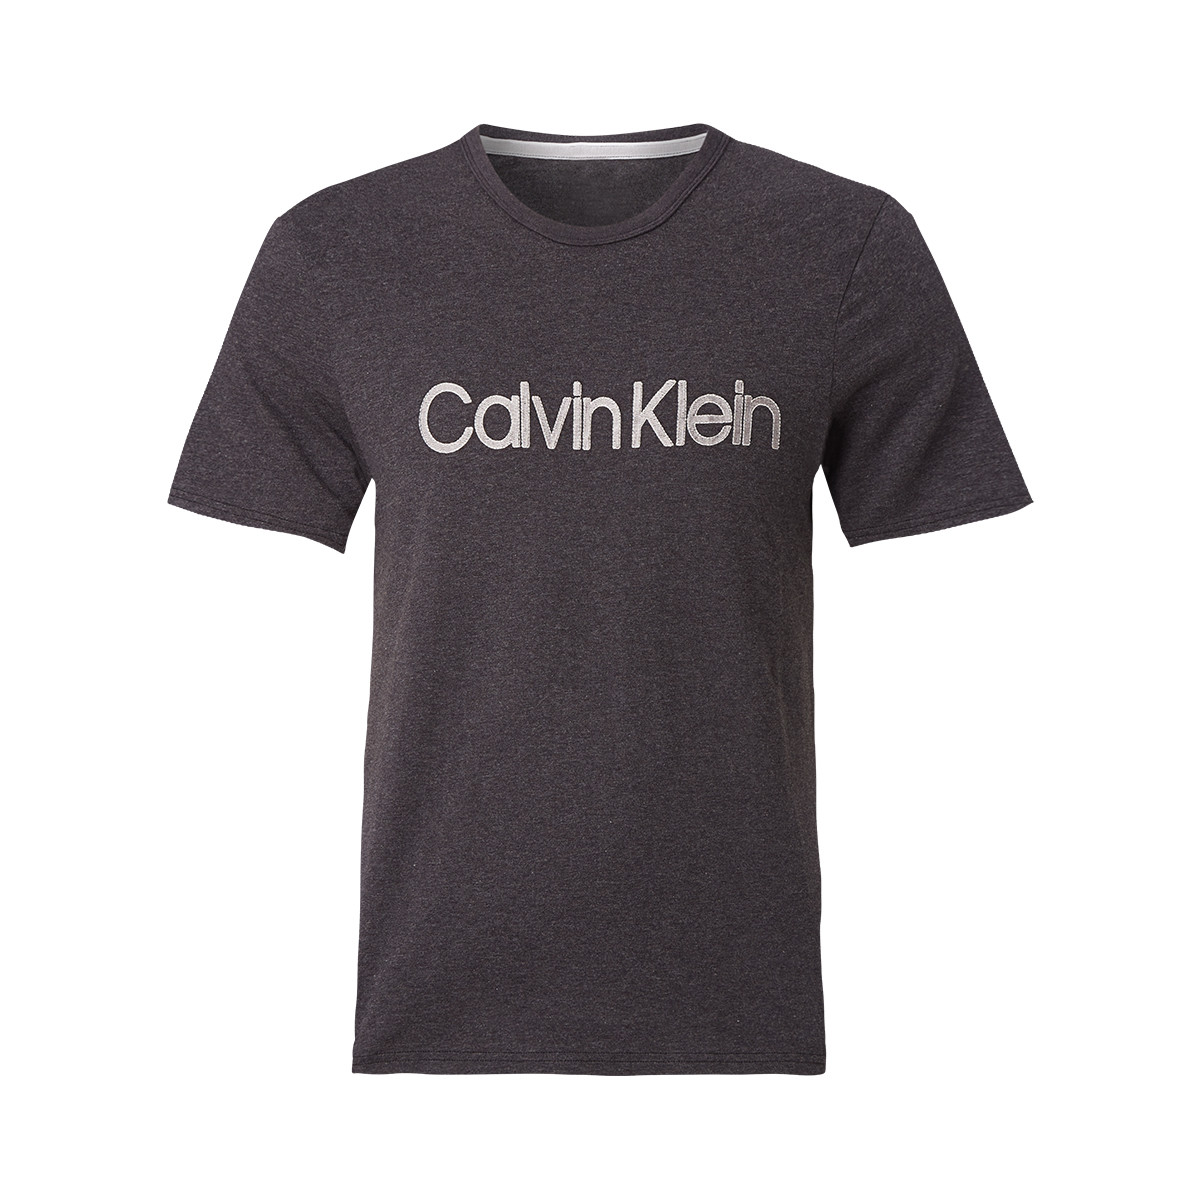 Se Calvin Klein T-shirt, Farve: Heather, Størrelse: S, Dame hos Netlingeri.dk